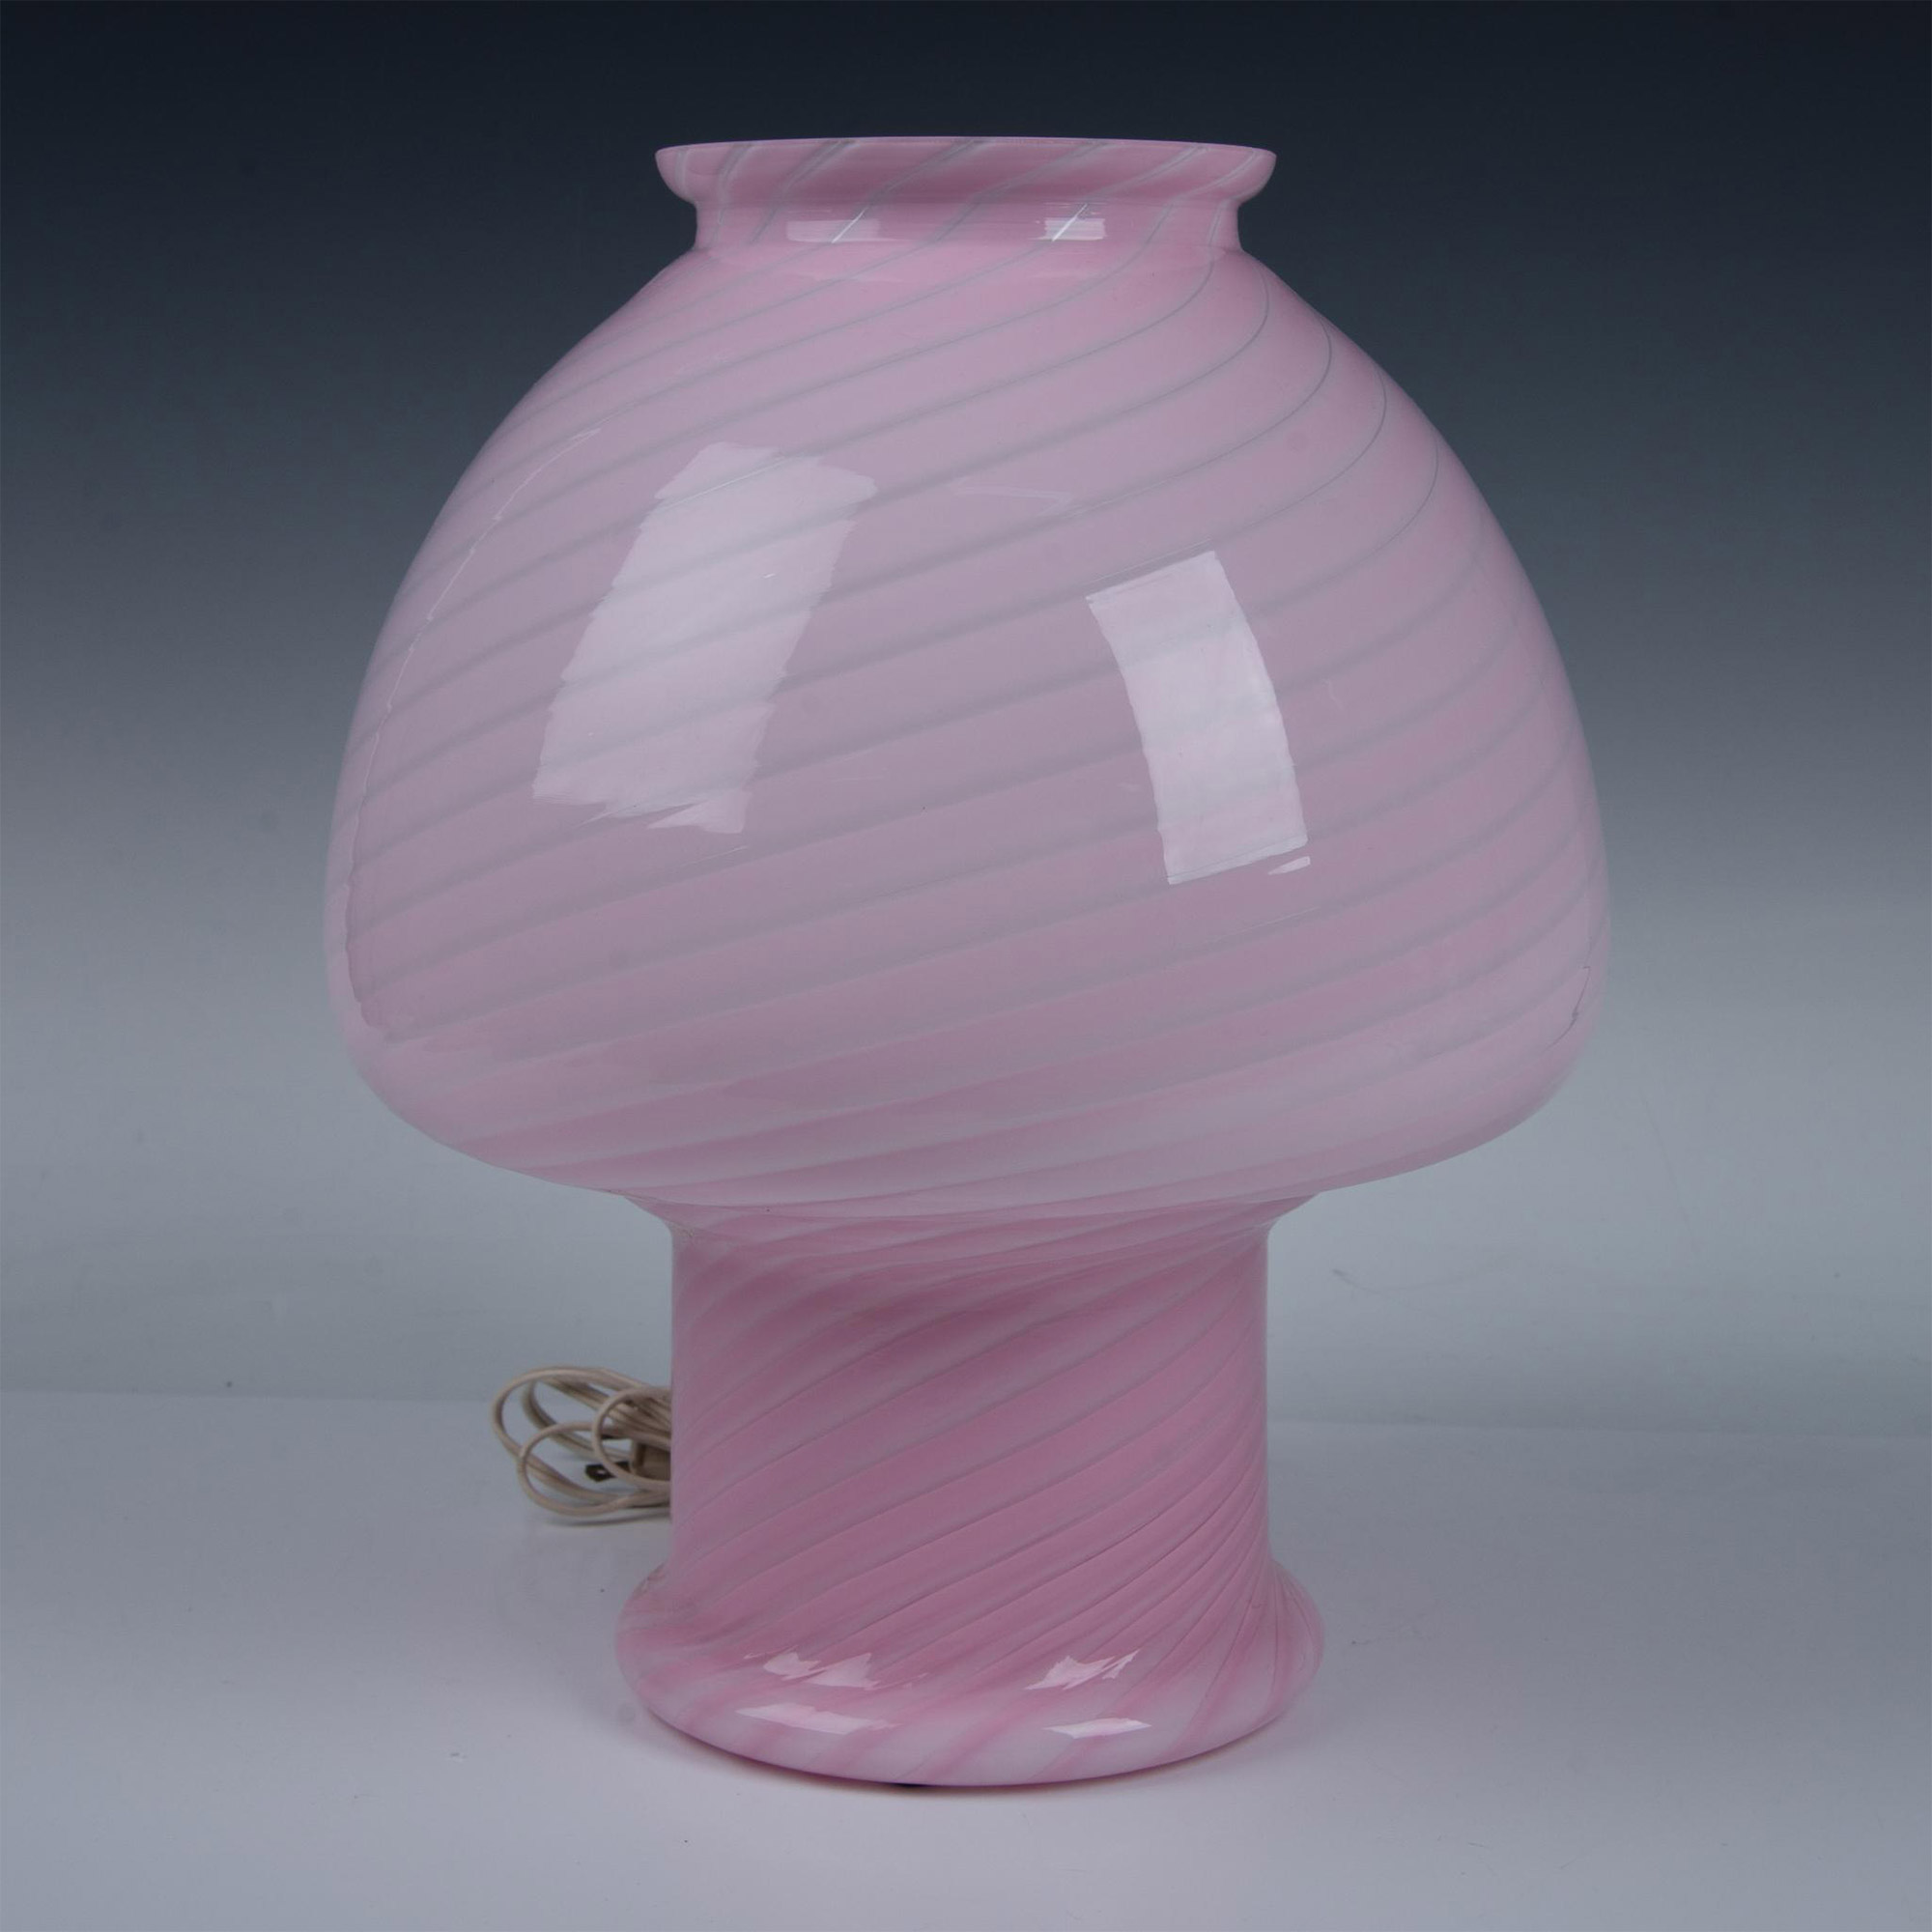 Vetri Murano Pink Glass Mushroom Lamp - Image 2 of 5